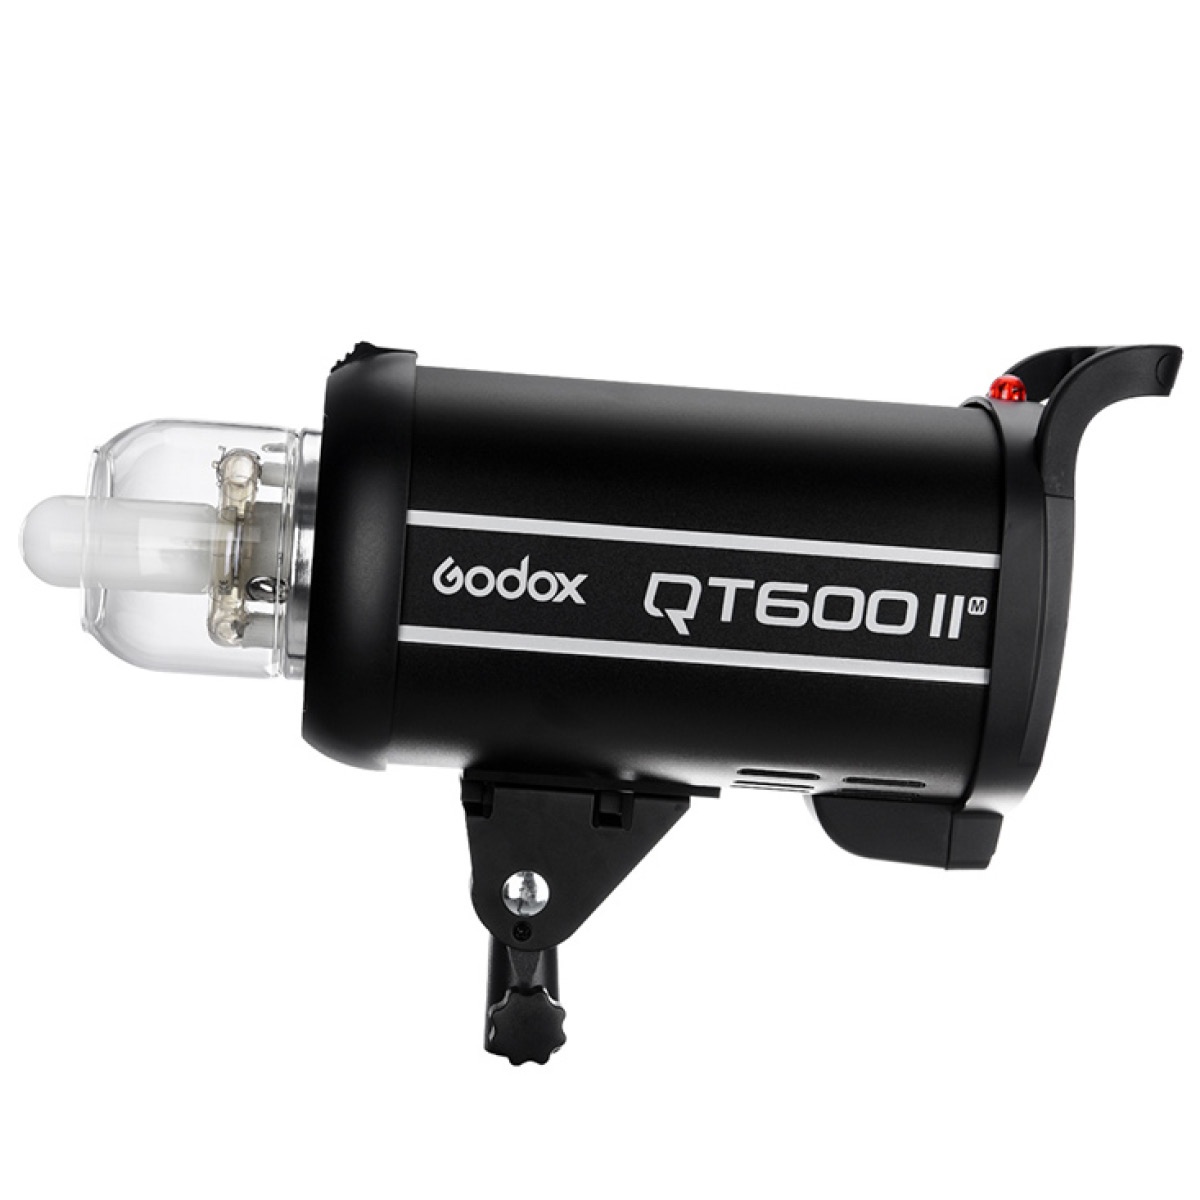 Godox QT 600 II M Studioblitz